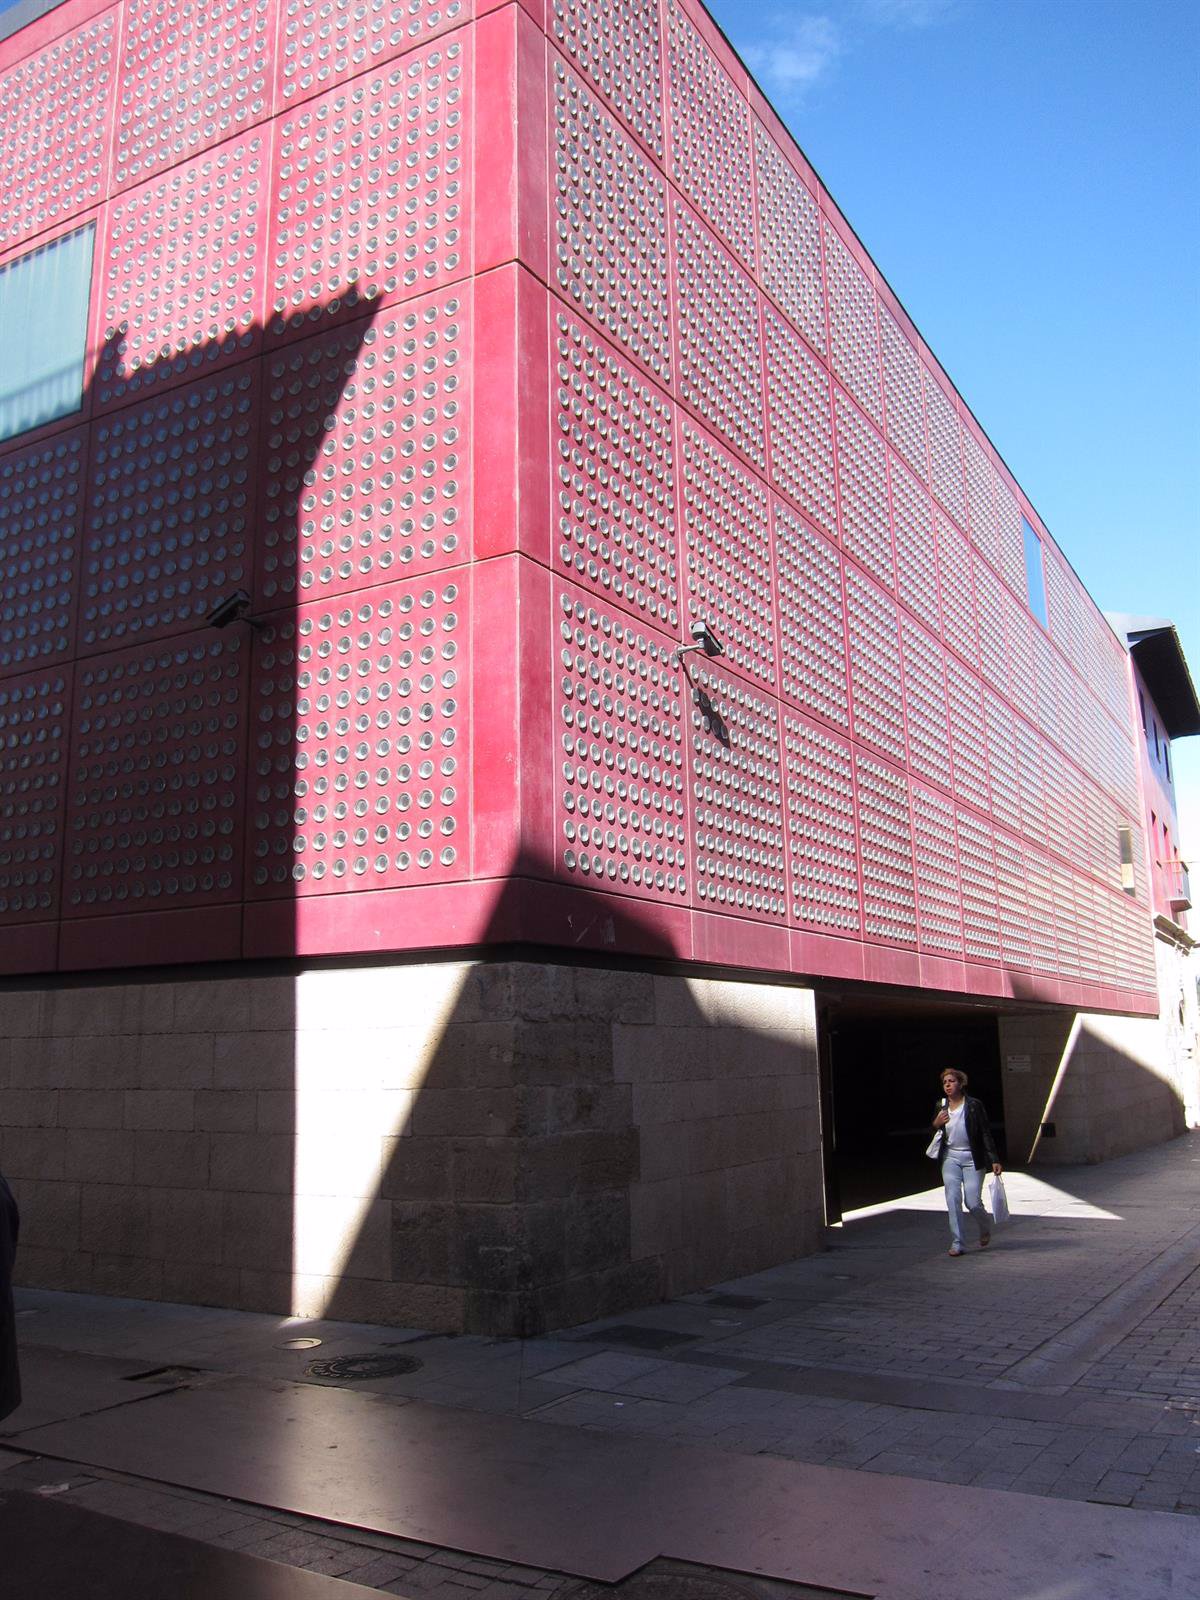 El Centro de la Cultura del Rioja amplía su horario de apertura desde hoy y hasta el 1 de octubre